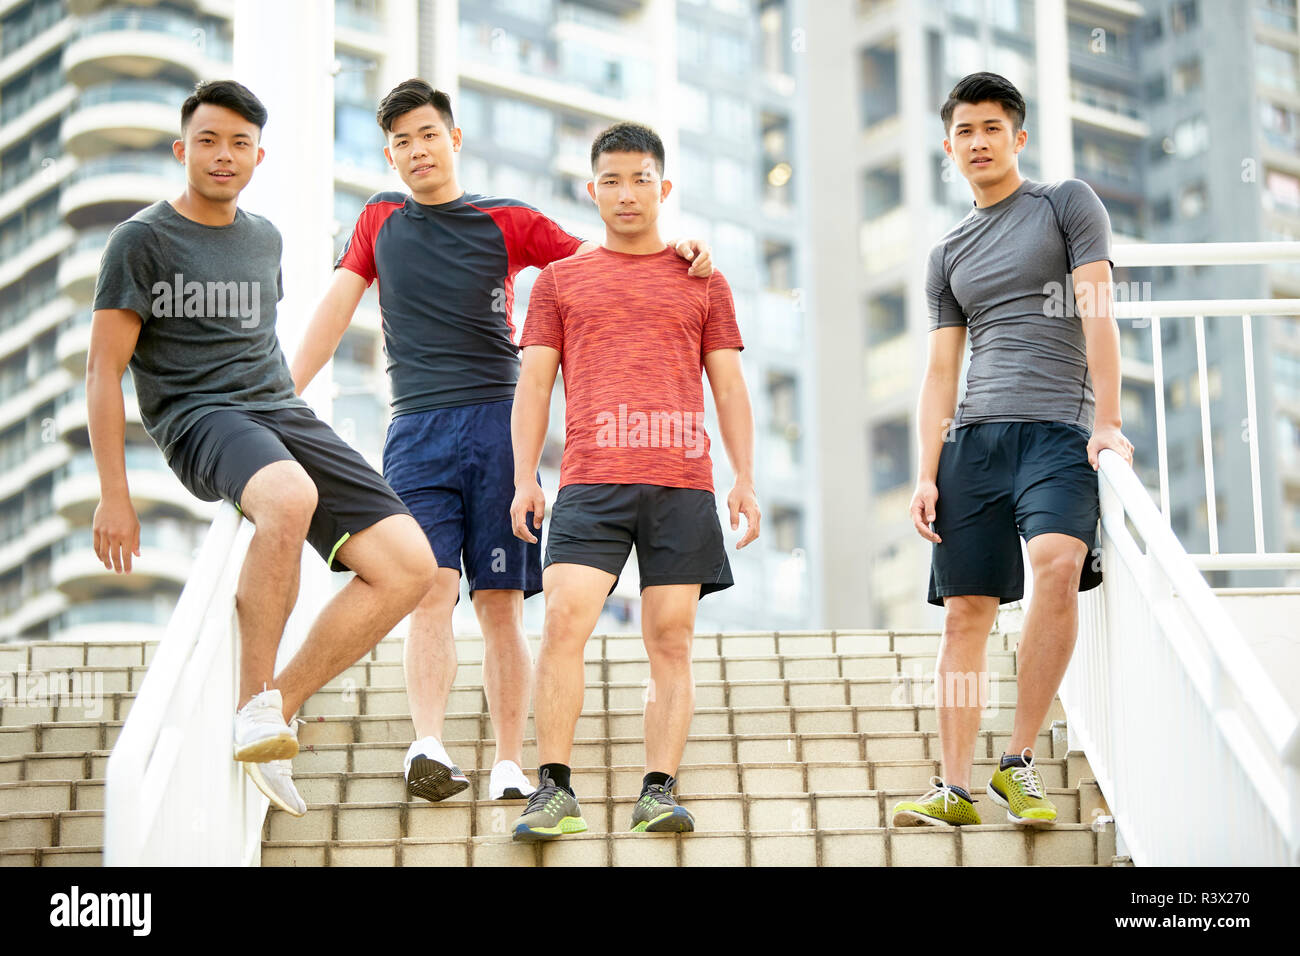 Portrait en extérieur d'une équipe de quatre jeunes athlètes asiatiques sur les mesures permanent Banque D'Images